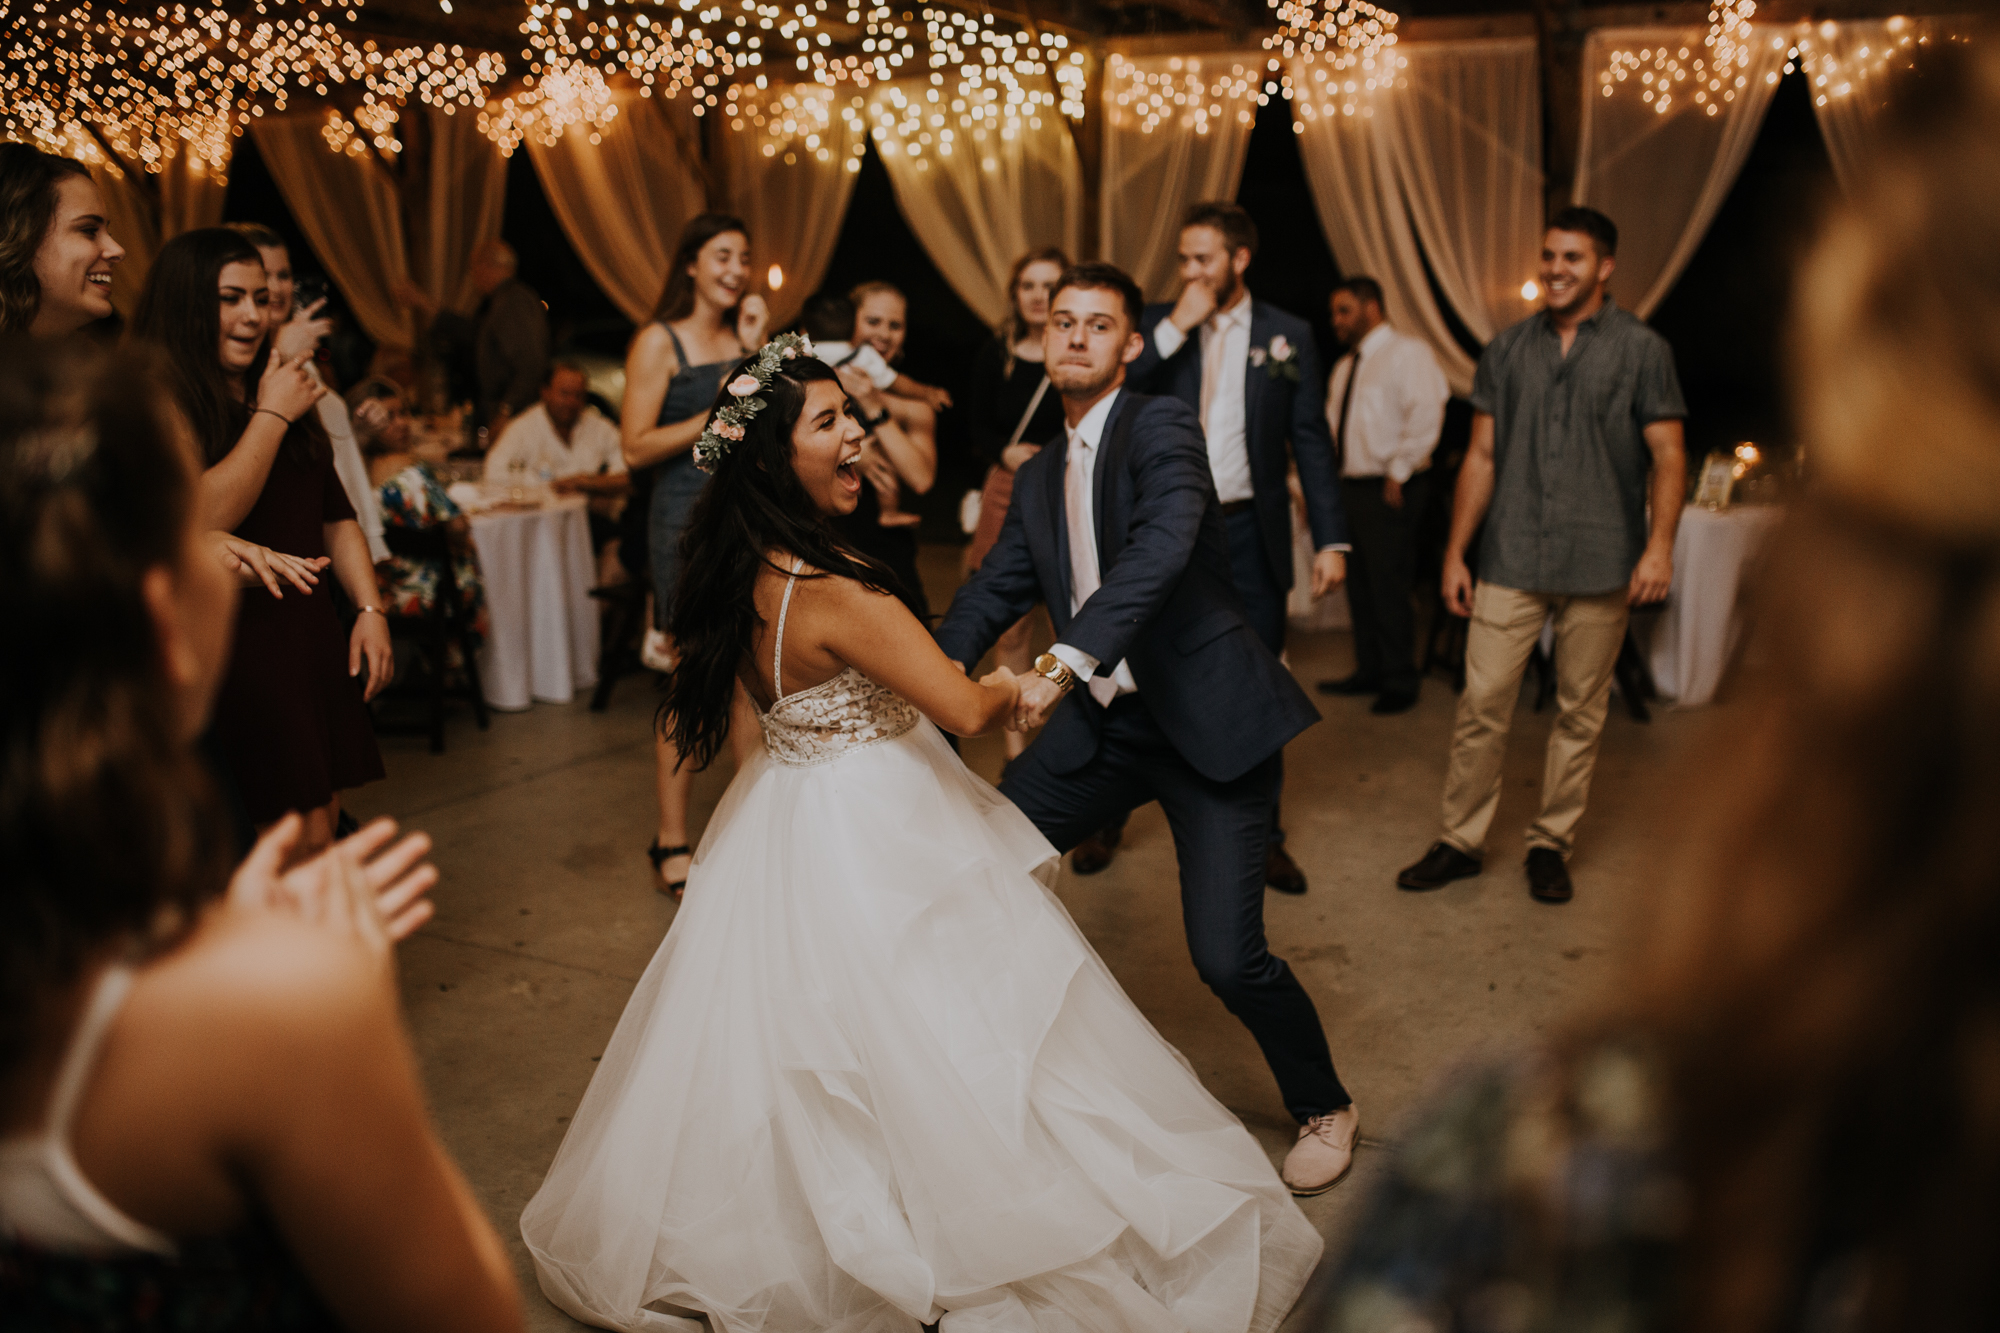 open dancing | reception dancing | boho wedding reception | Florida wedding | romantic sarasota wedding